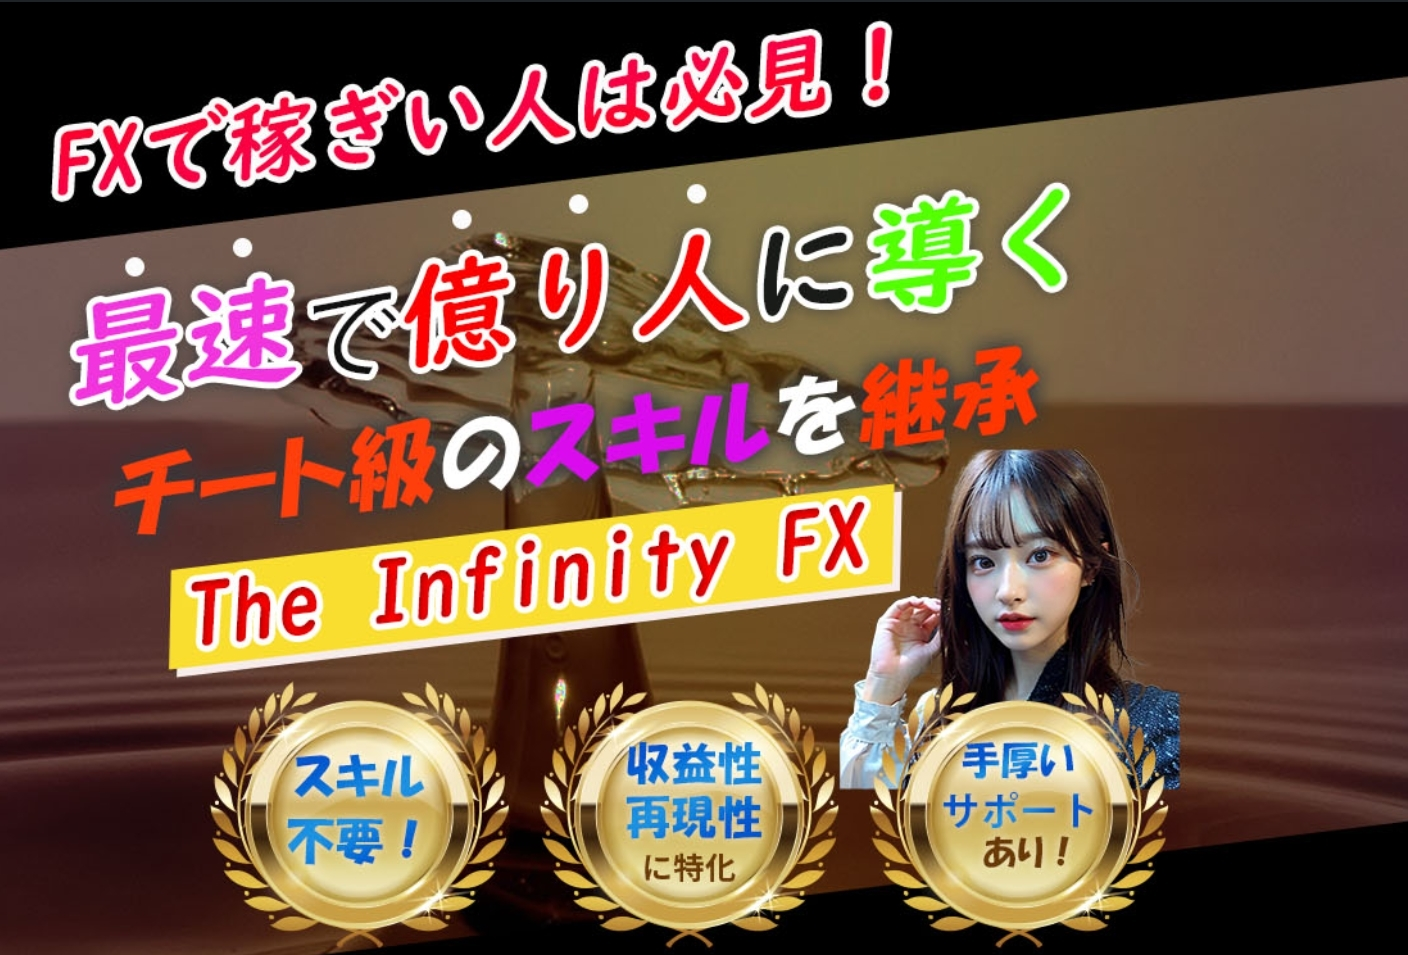 The Infinity FX